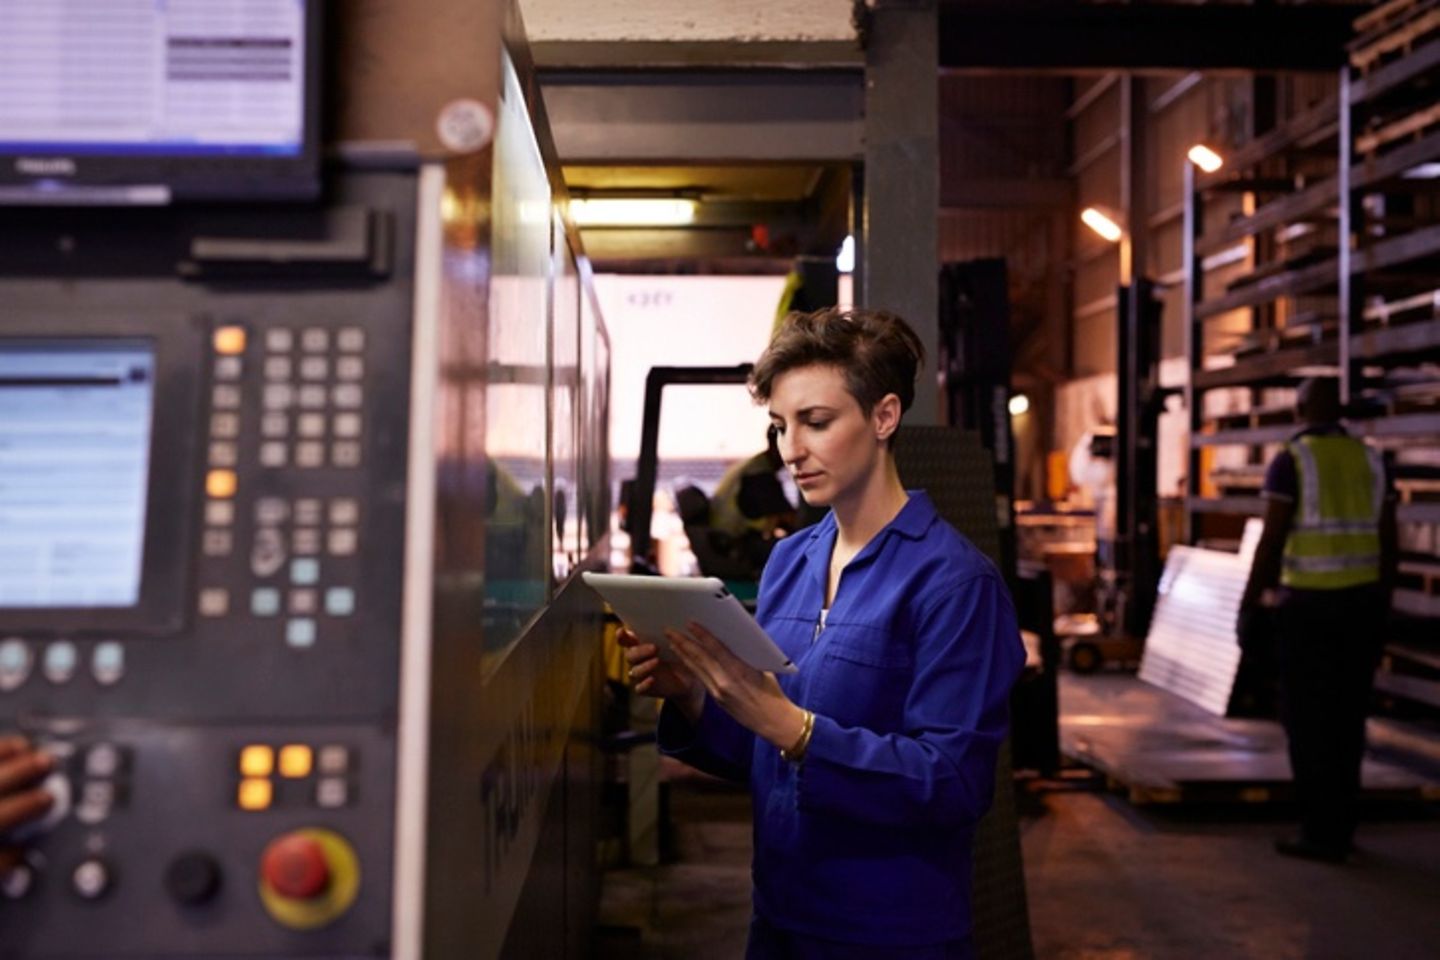 Una trabajadora del acero vestida con traje azul sujetando una tablet en la mano.